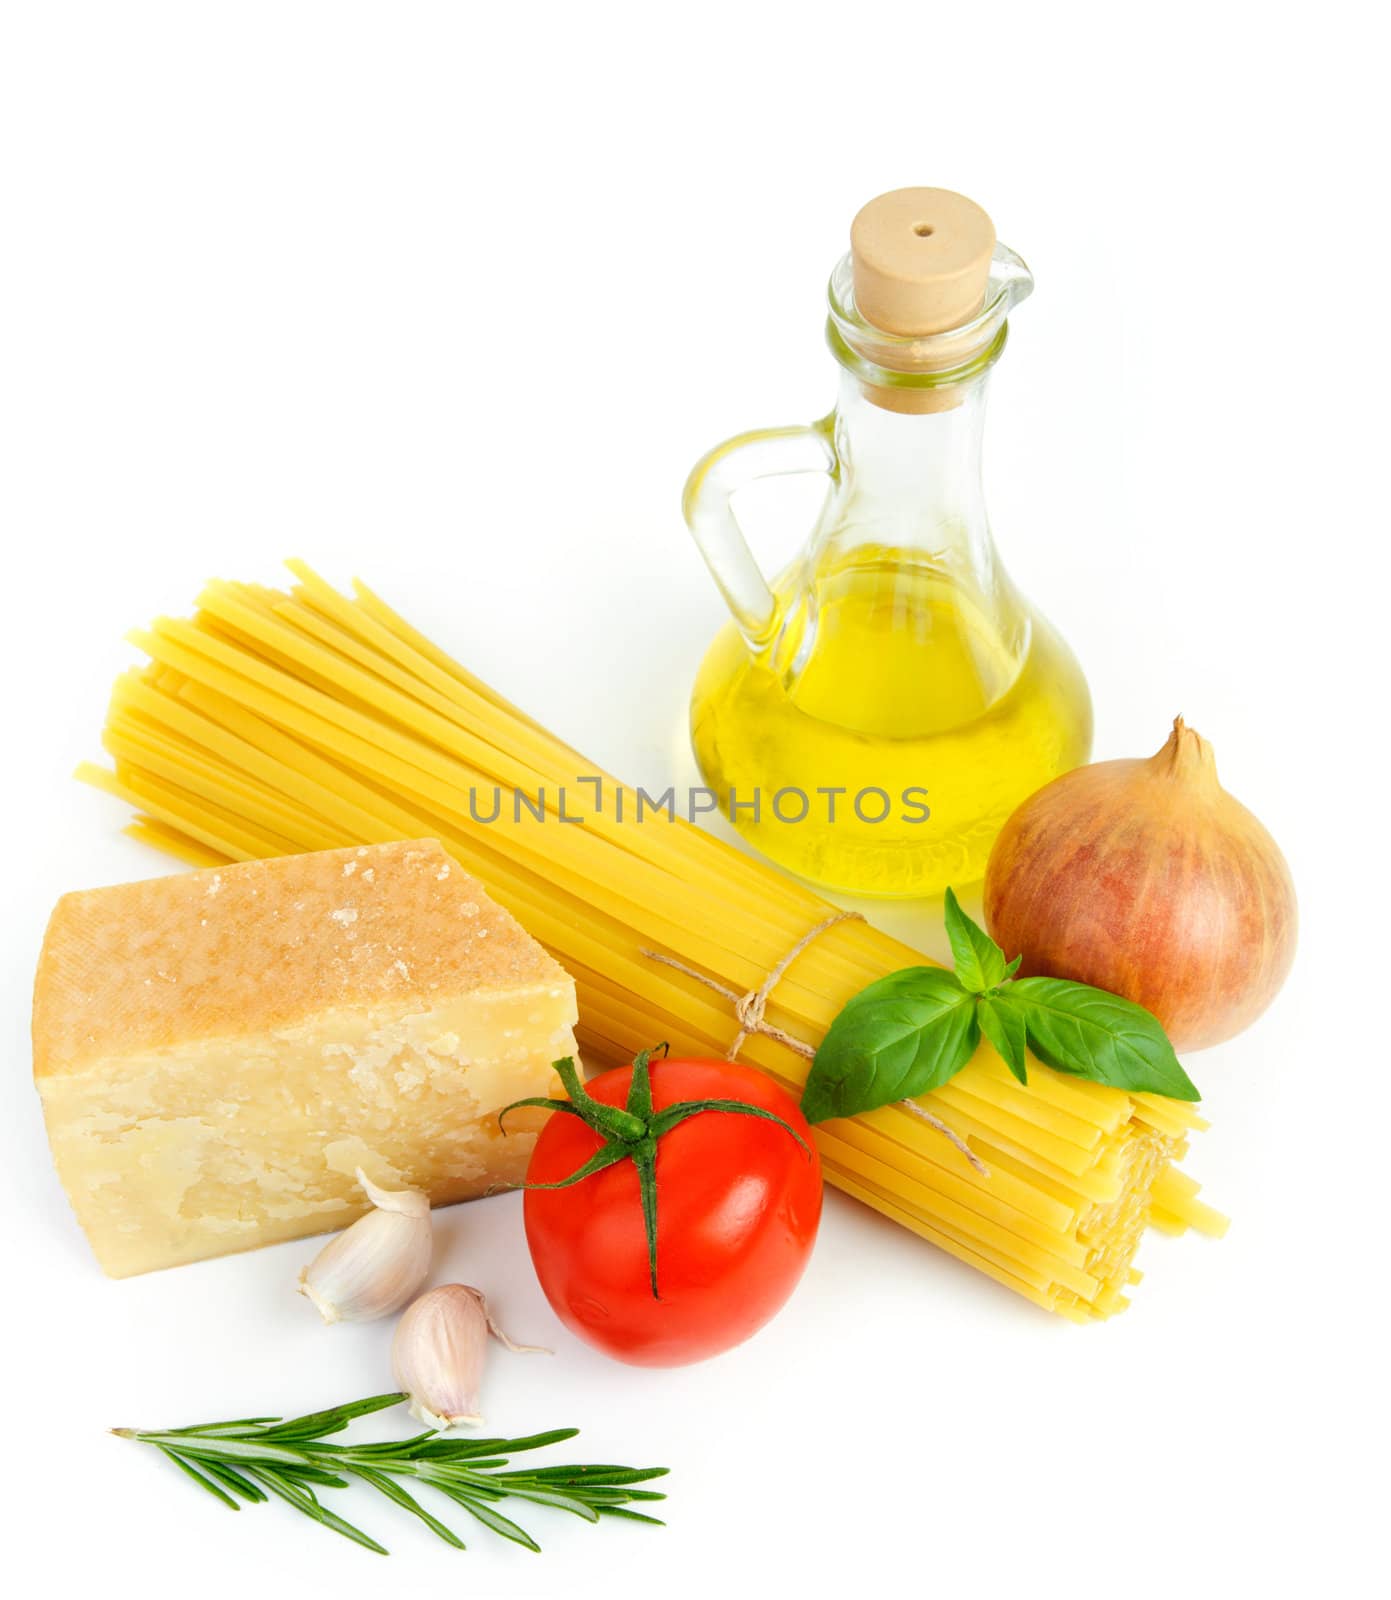 Ingredients for italian cousine by velkol